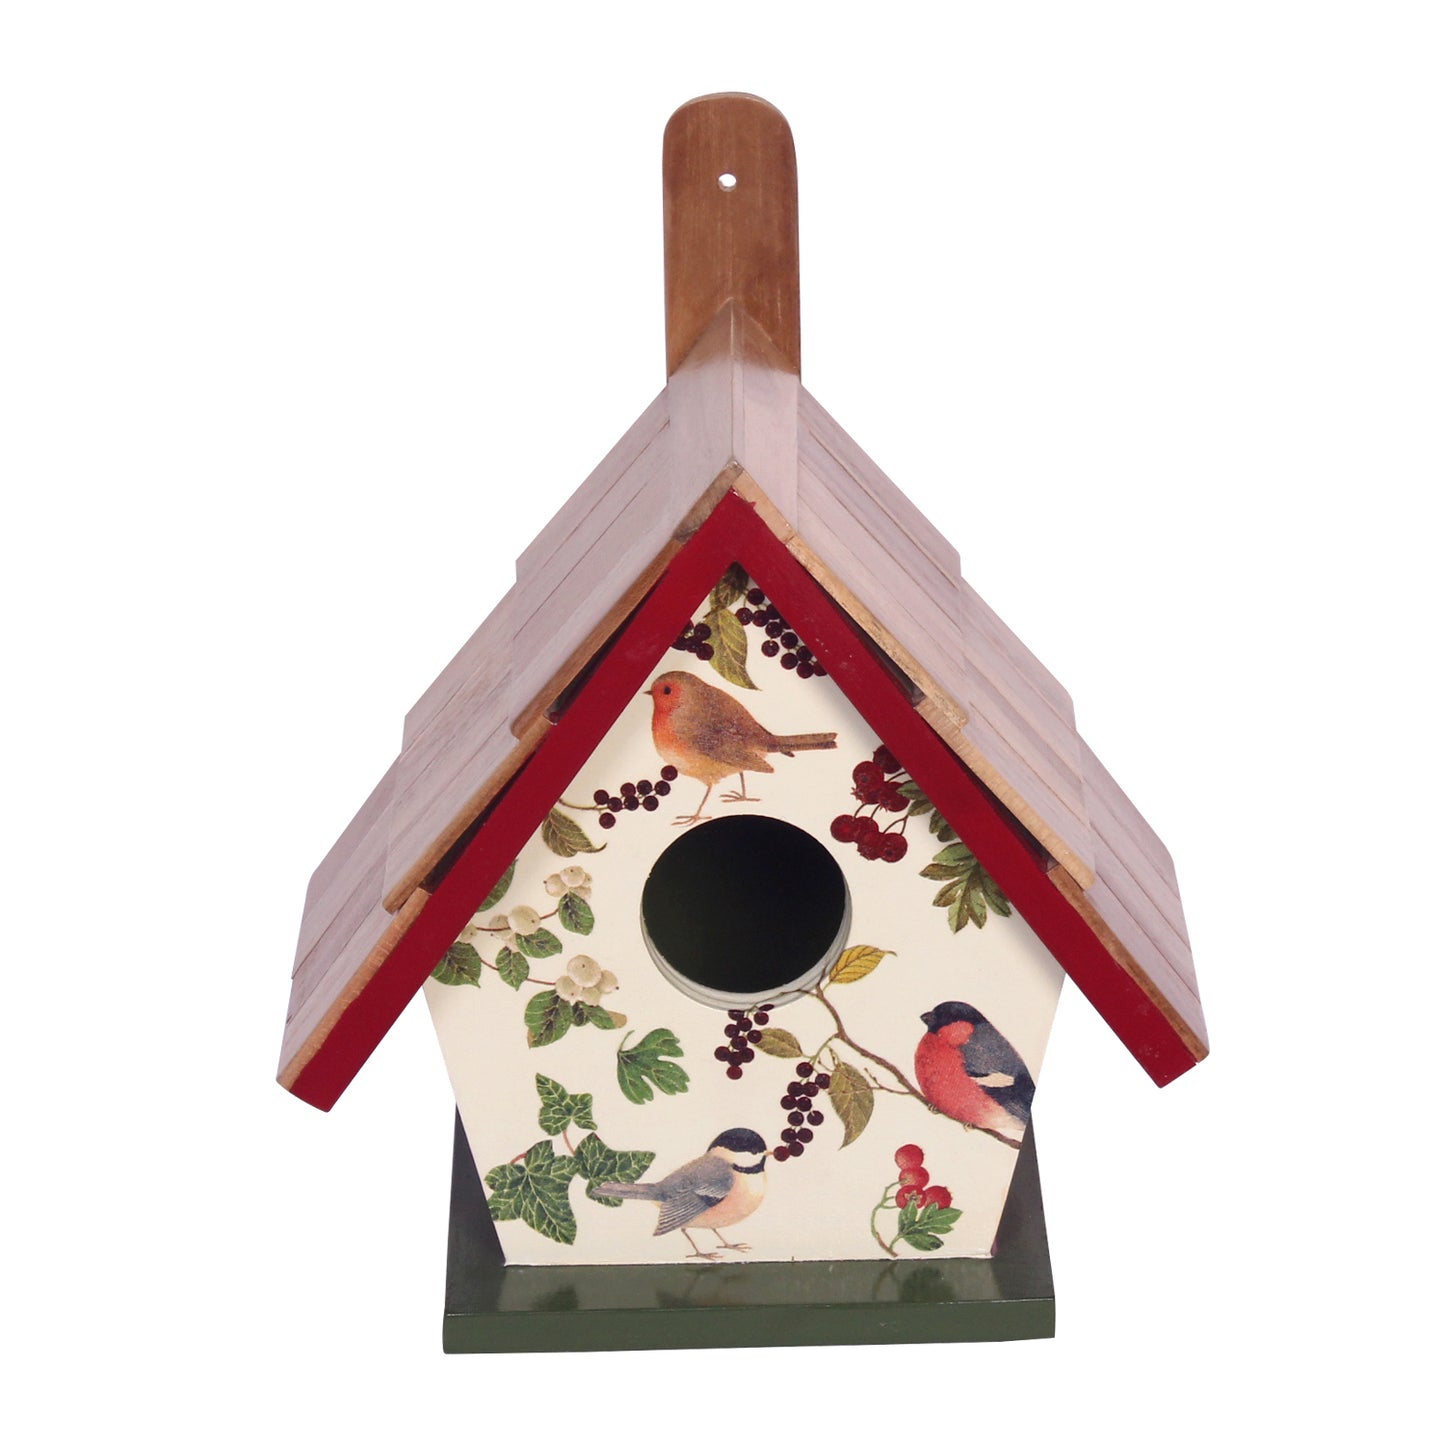 The Weaver's Nest Teak Wood Roof Bird House